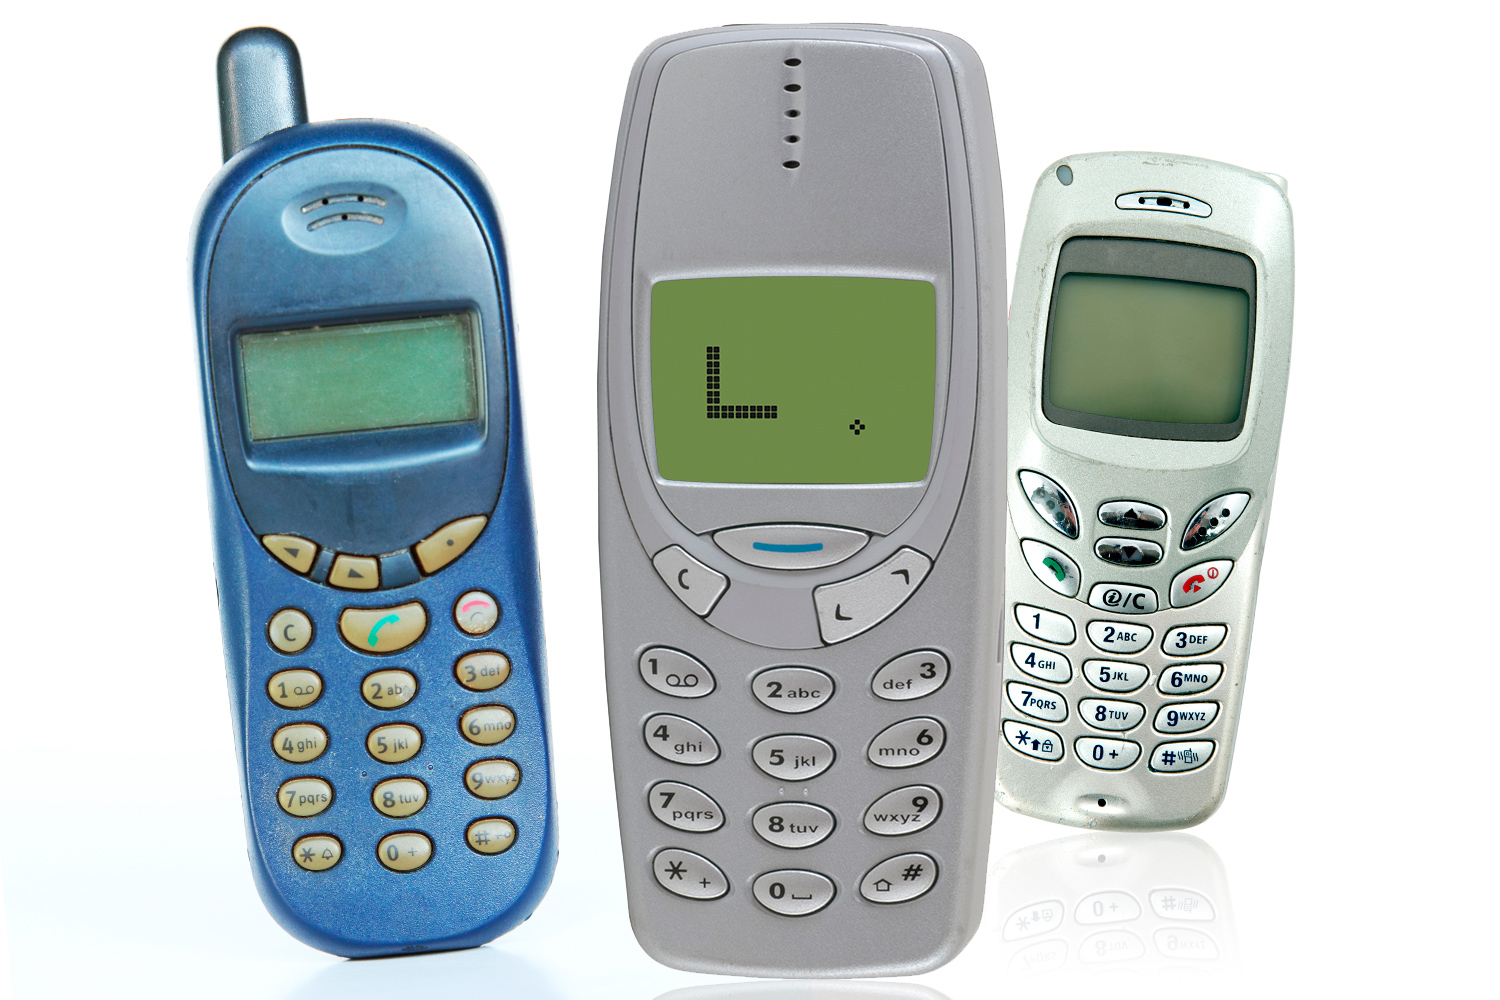 Šest důvodů, proč byl váš první mobil prostě TOP